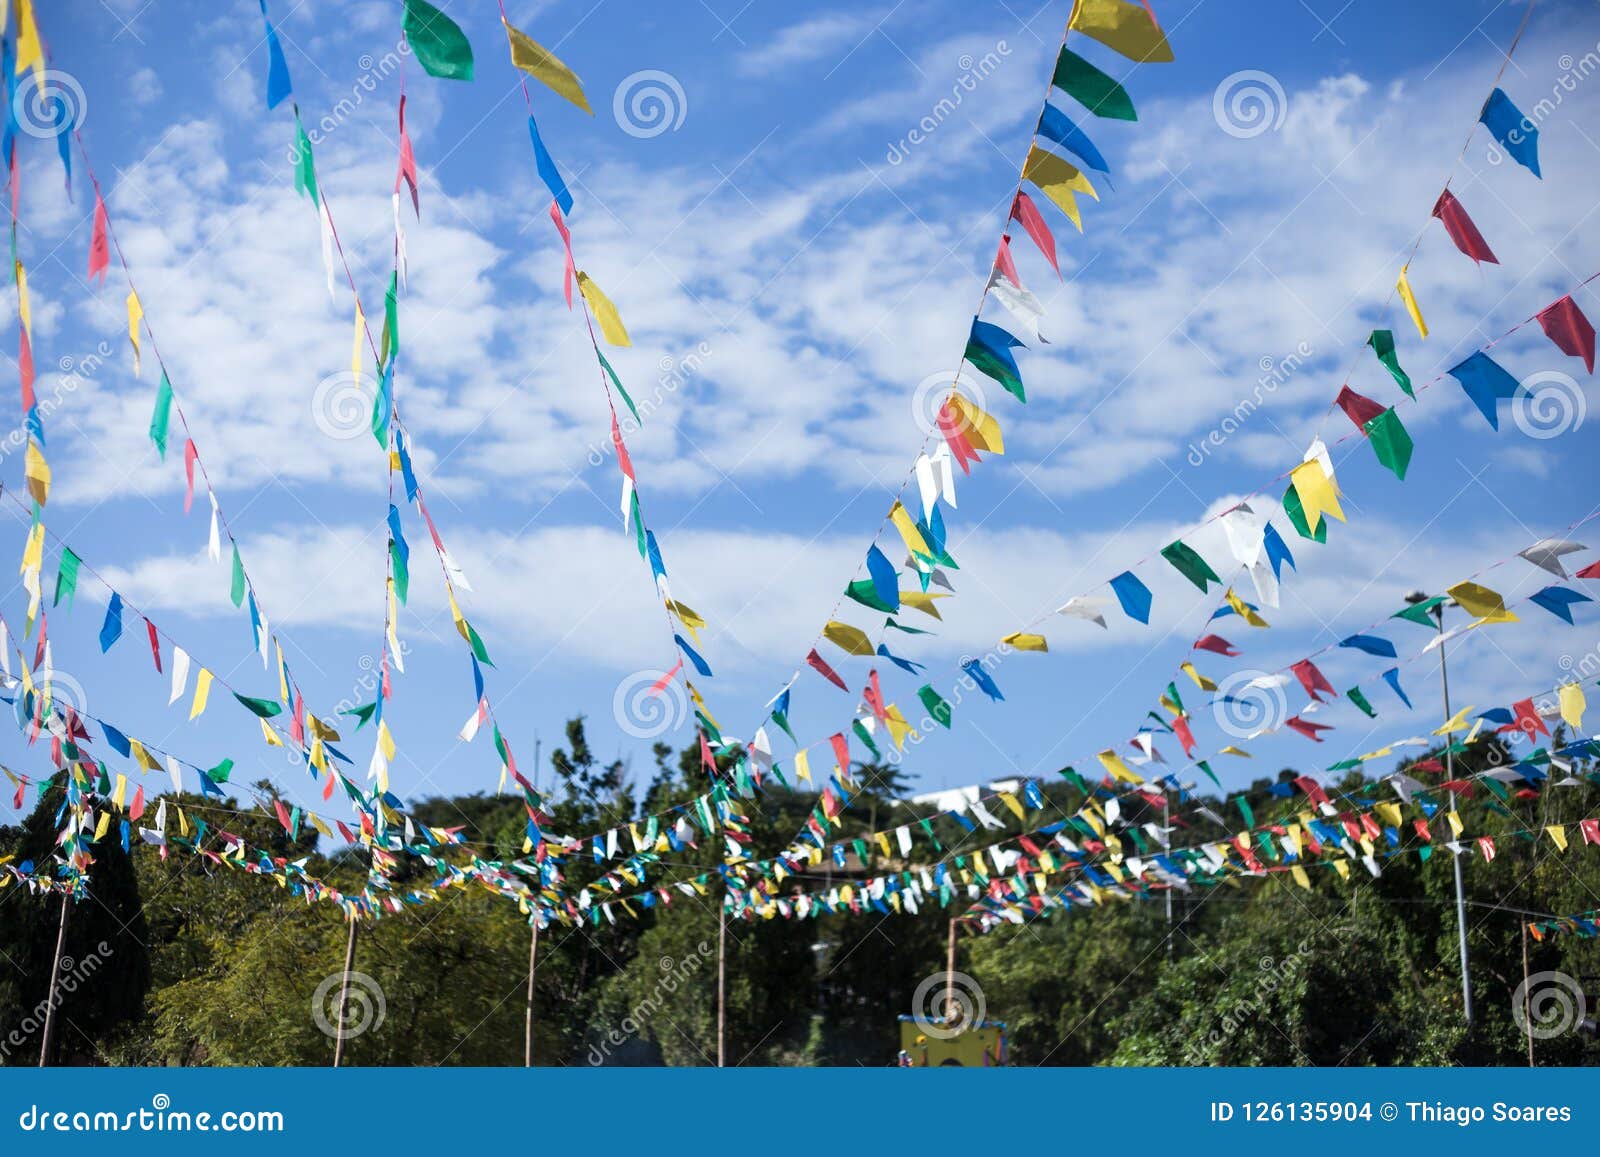 a tradicional view of the junina festival/ festa junina